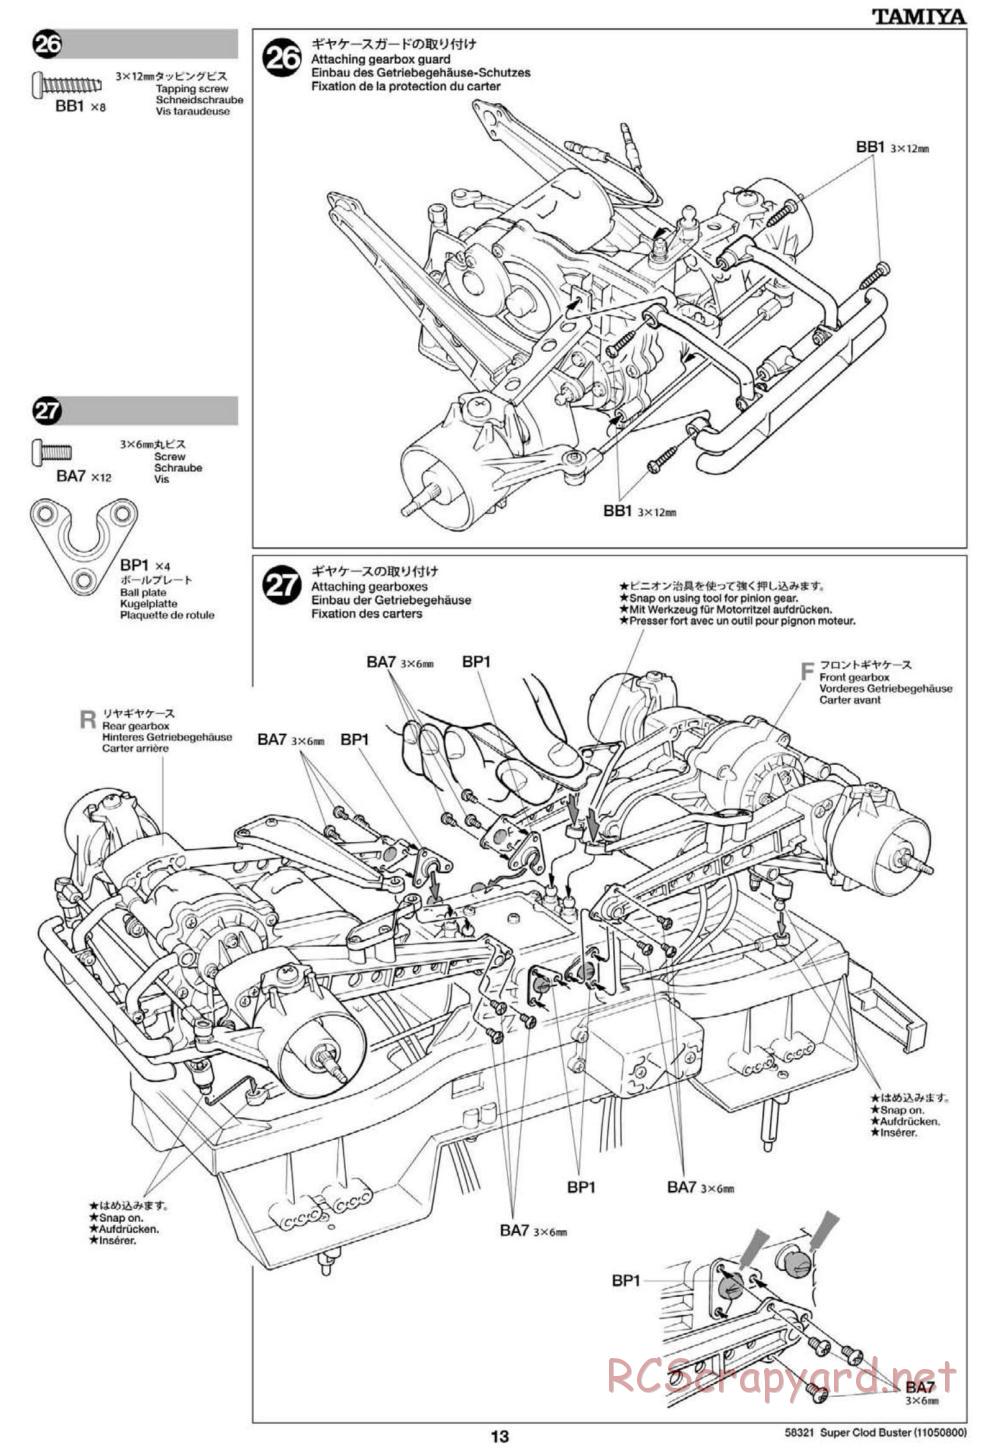 Tamiya - Super Clod Buster Chassis - Manual - Page 13